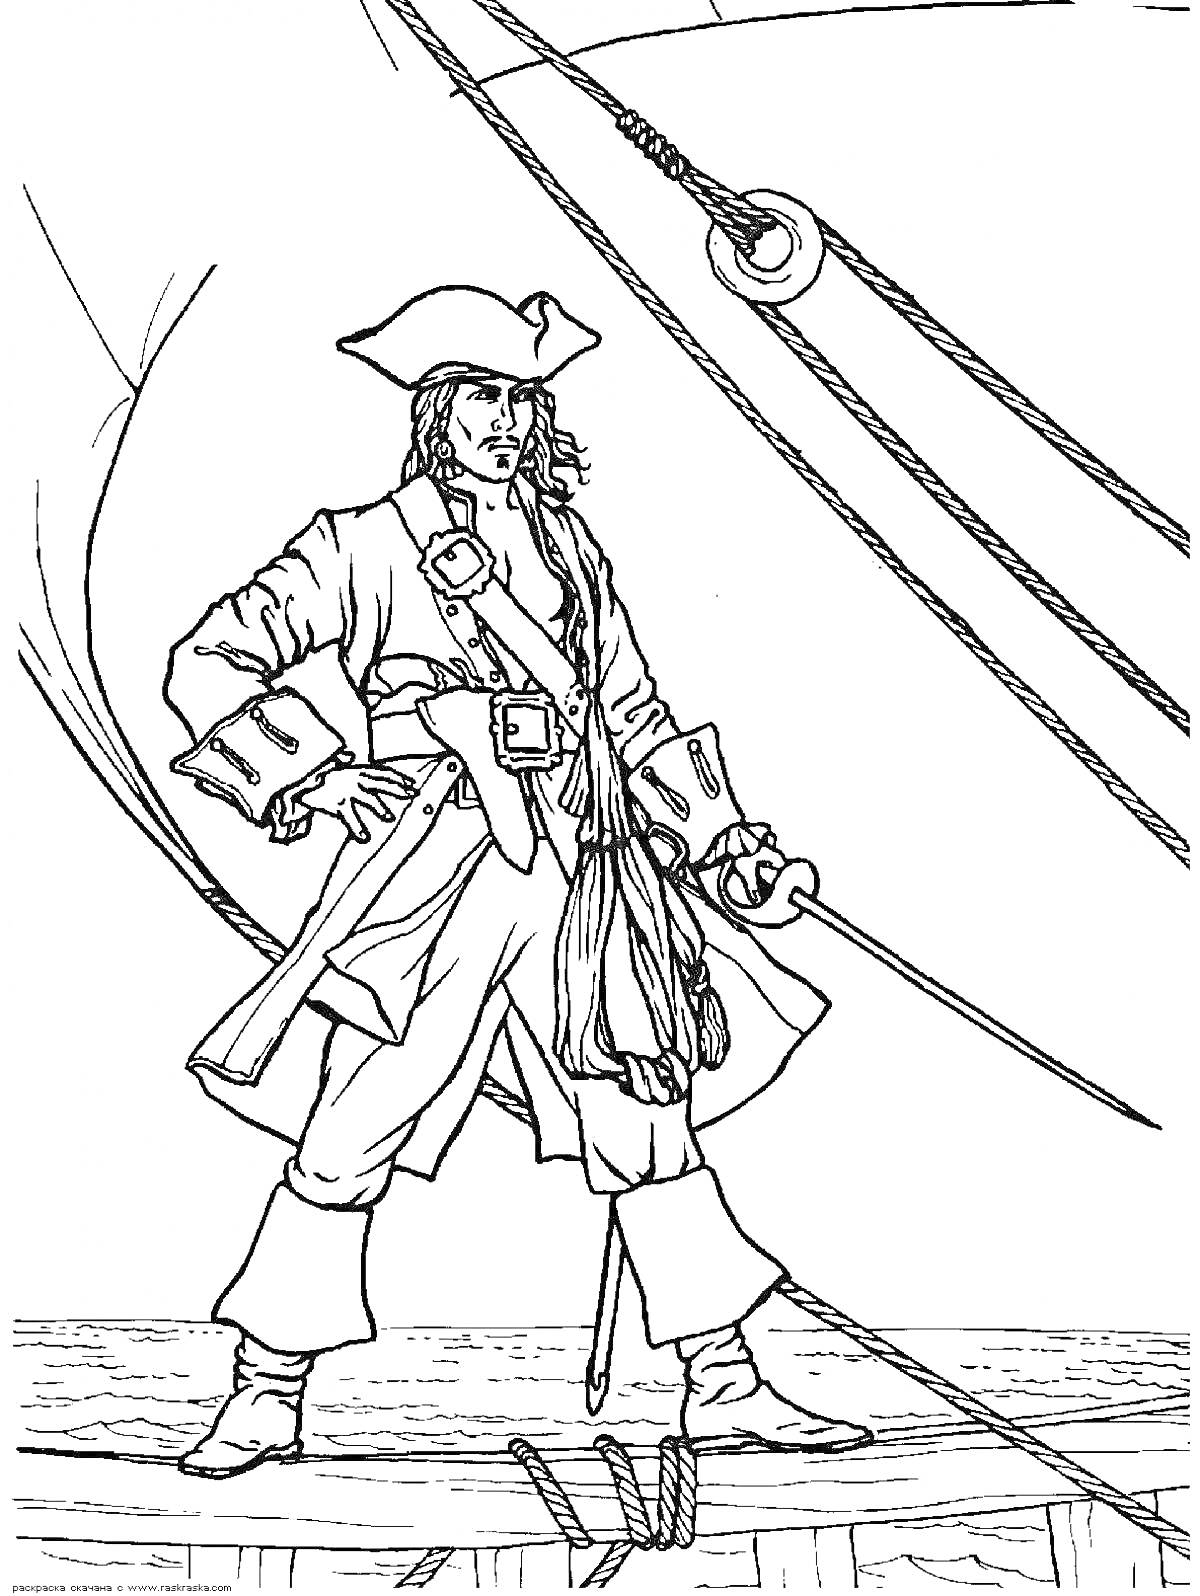 Пират на палубе корабля с саблей, фалами и поручнями